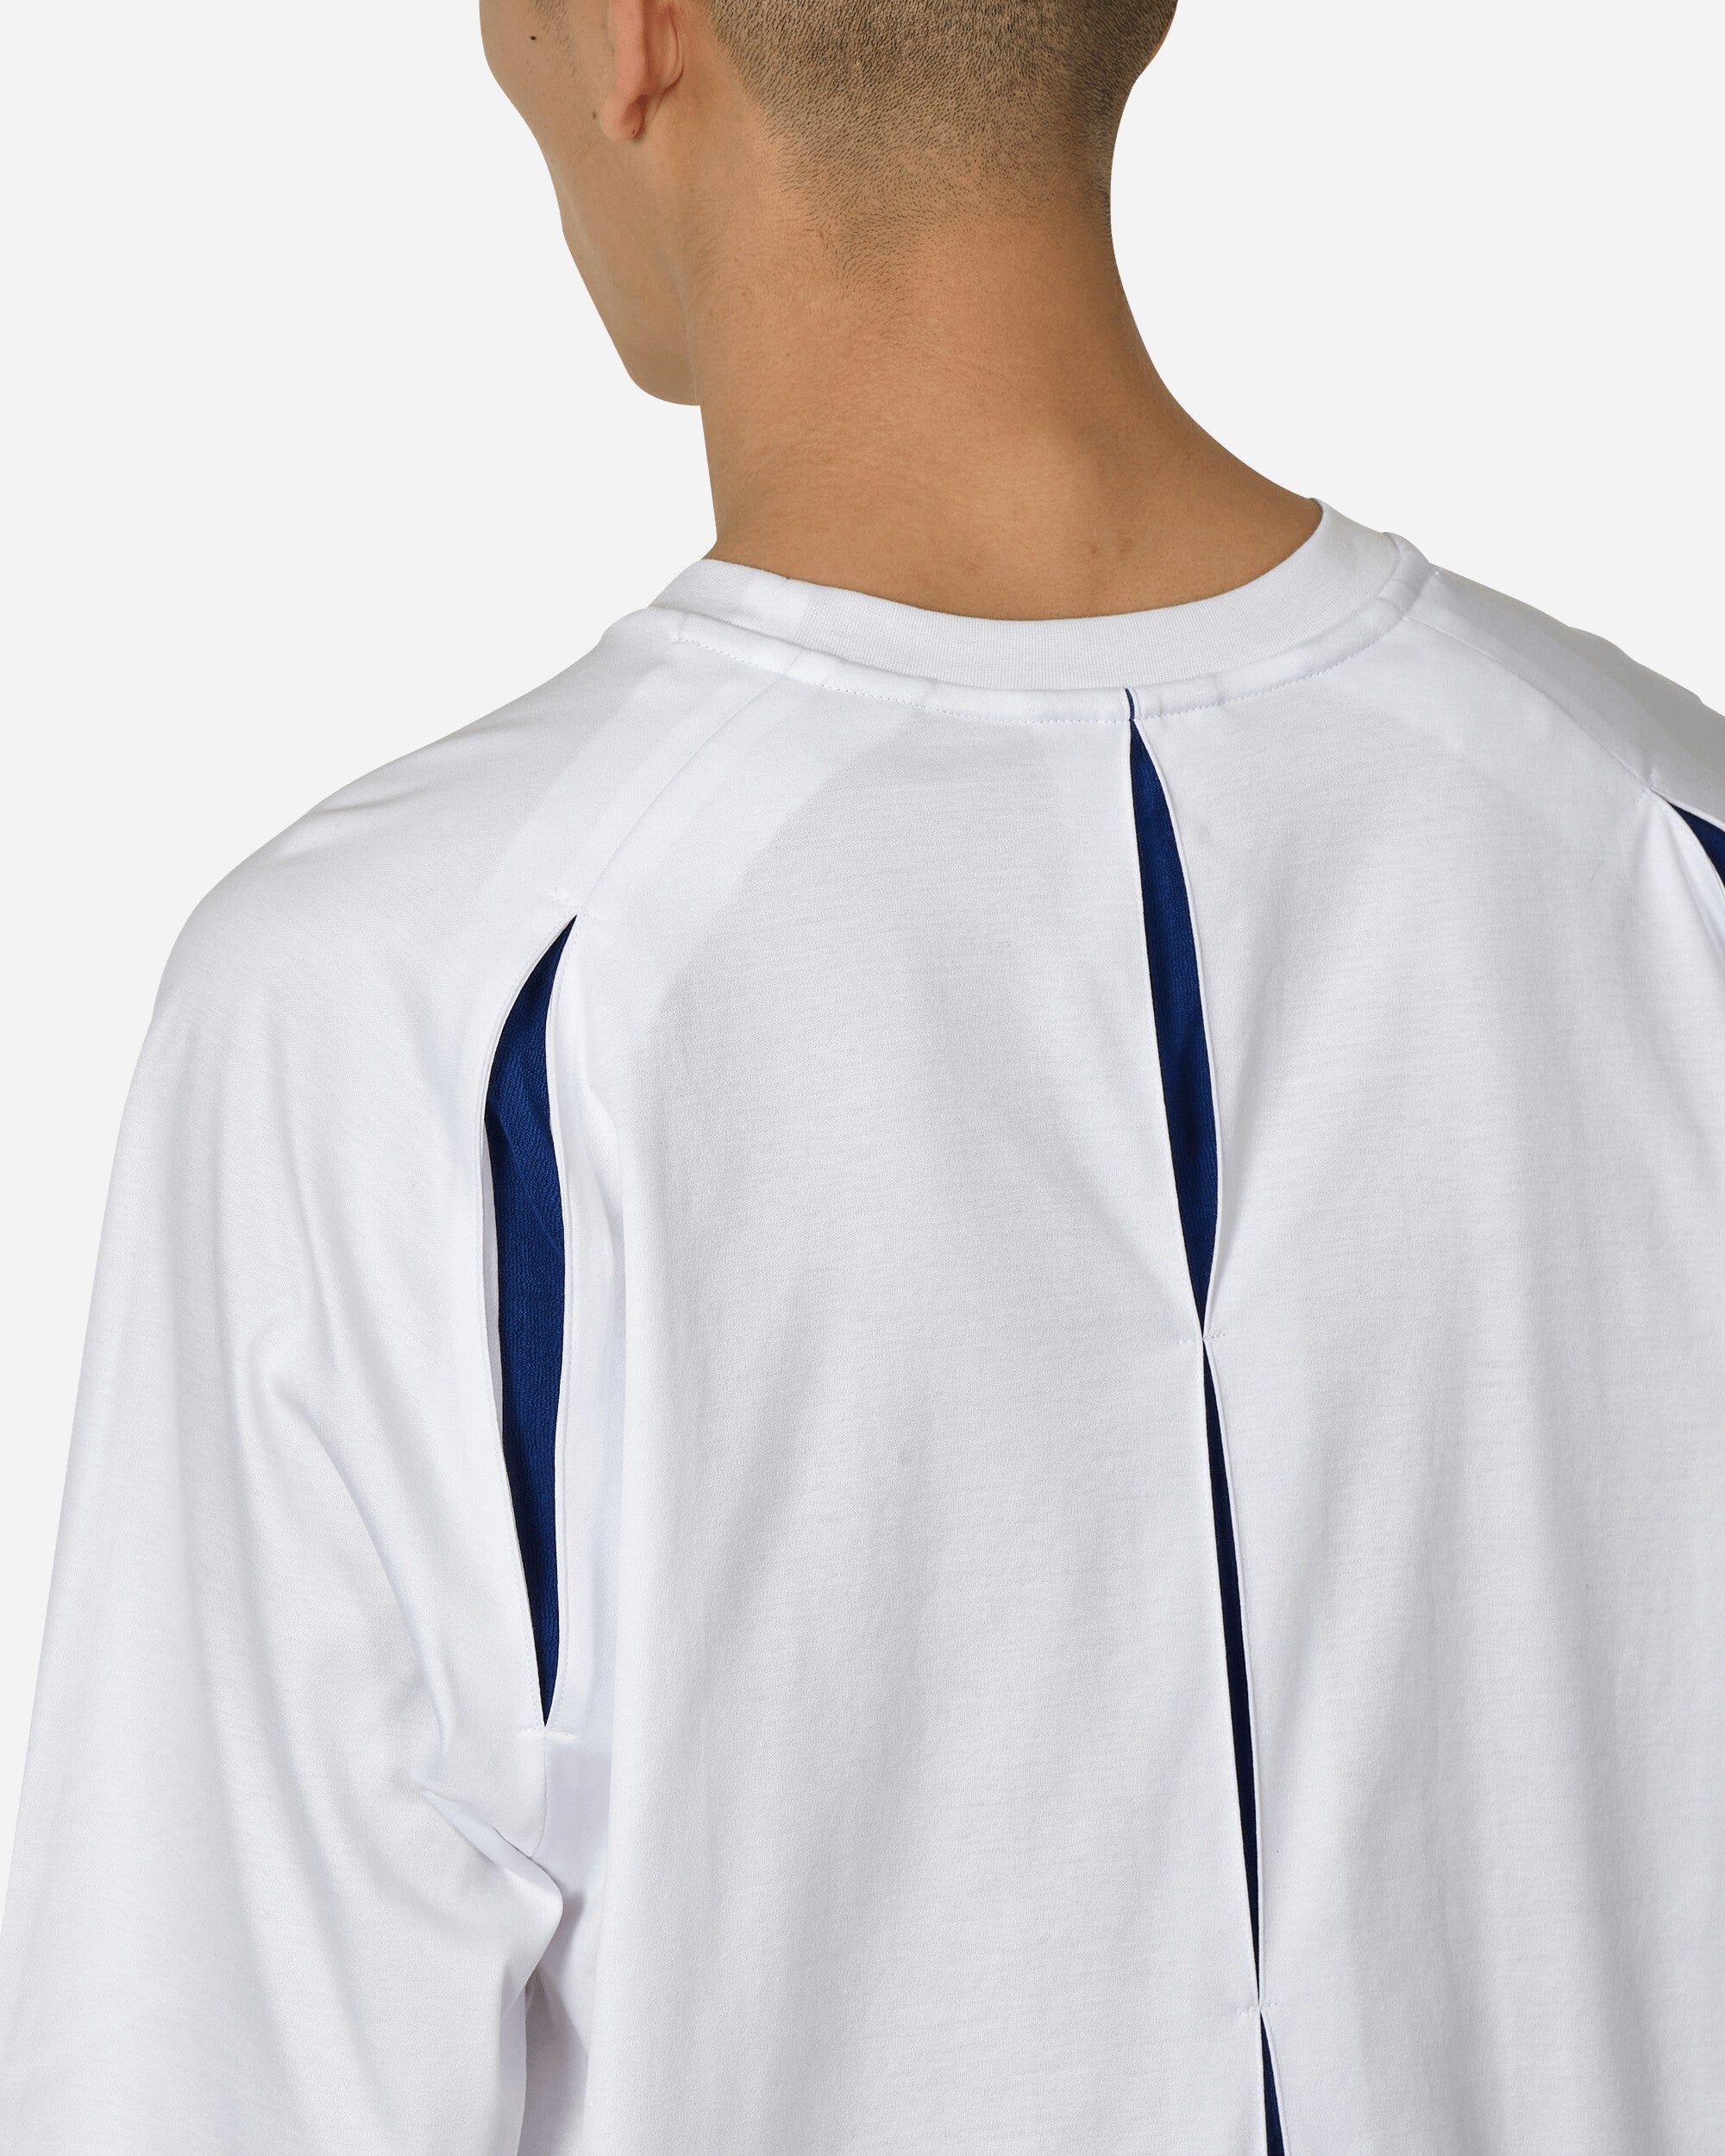 _J.L-A.L_ Bellow T-Shirt Brigth Blue Bright White T-Shirts Top JBMW057FA49 WTH0006